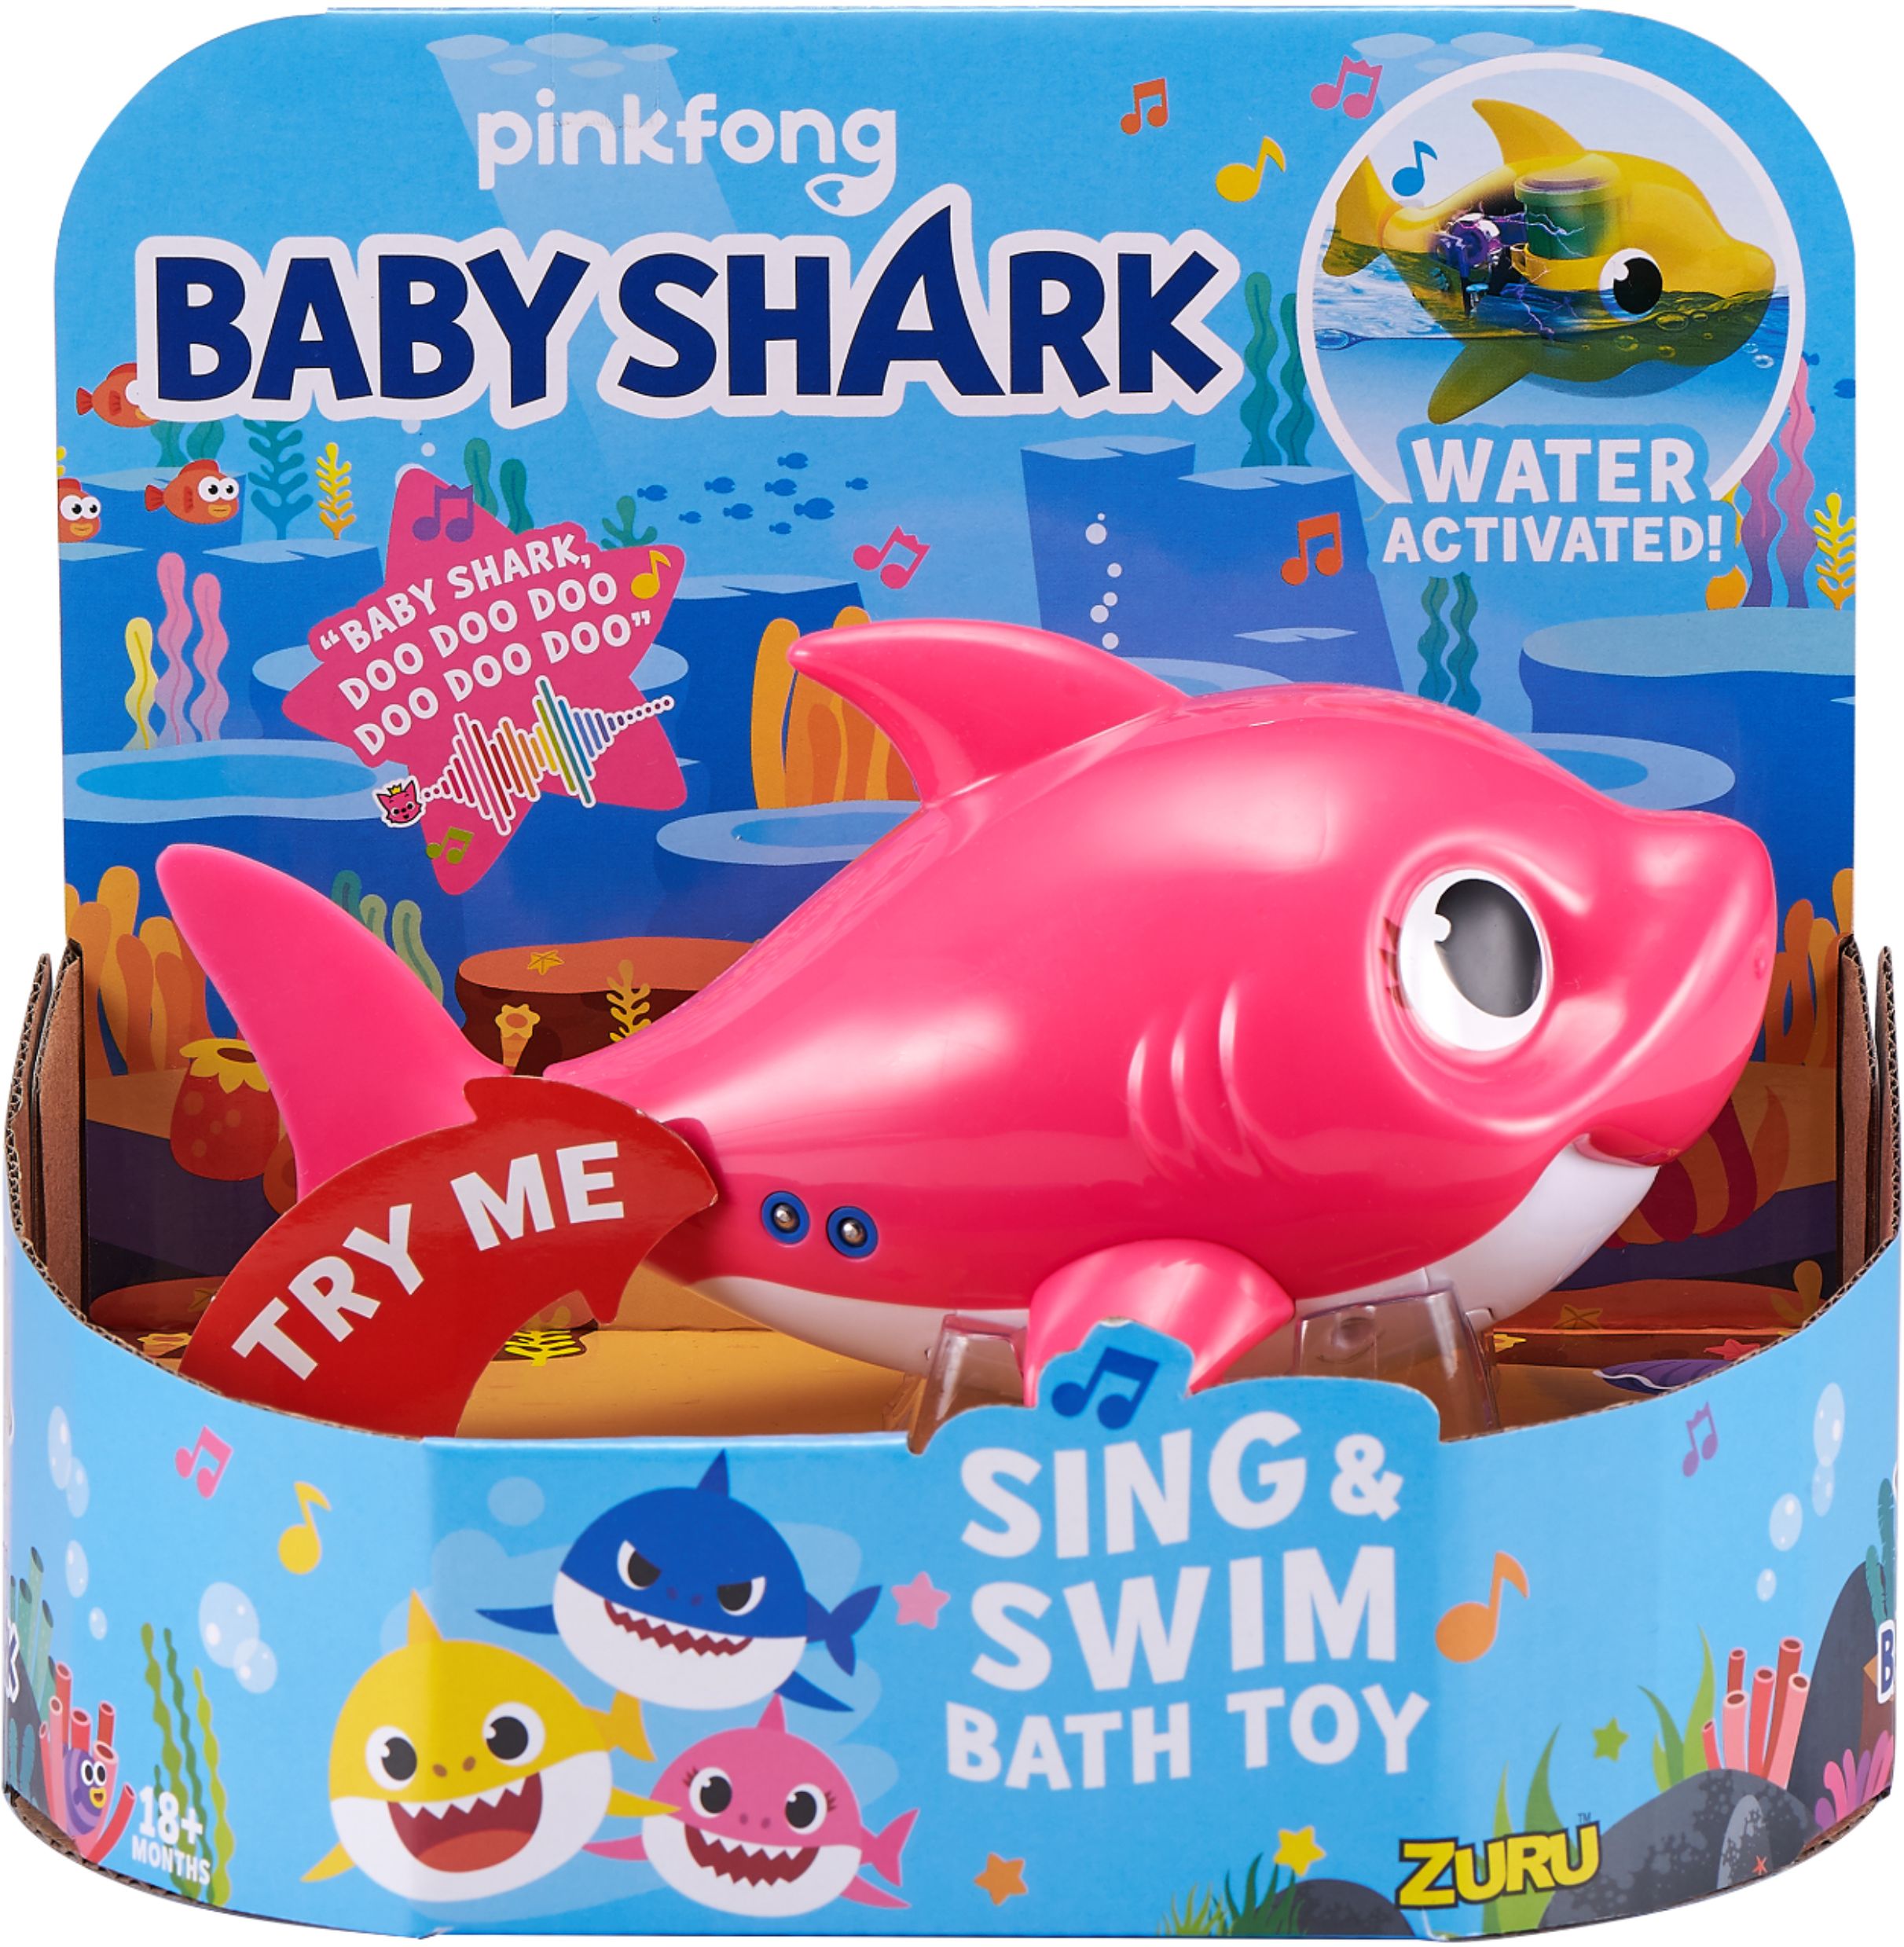 ZURU 25282-S003 Baby Shark Sing and Swim Bath Toy for sale online